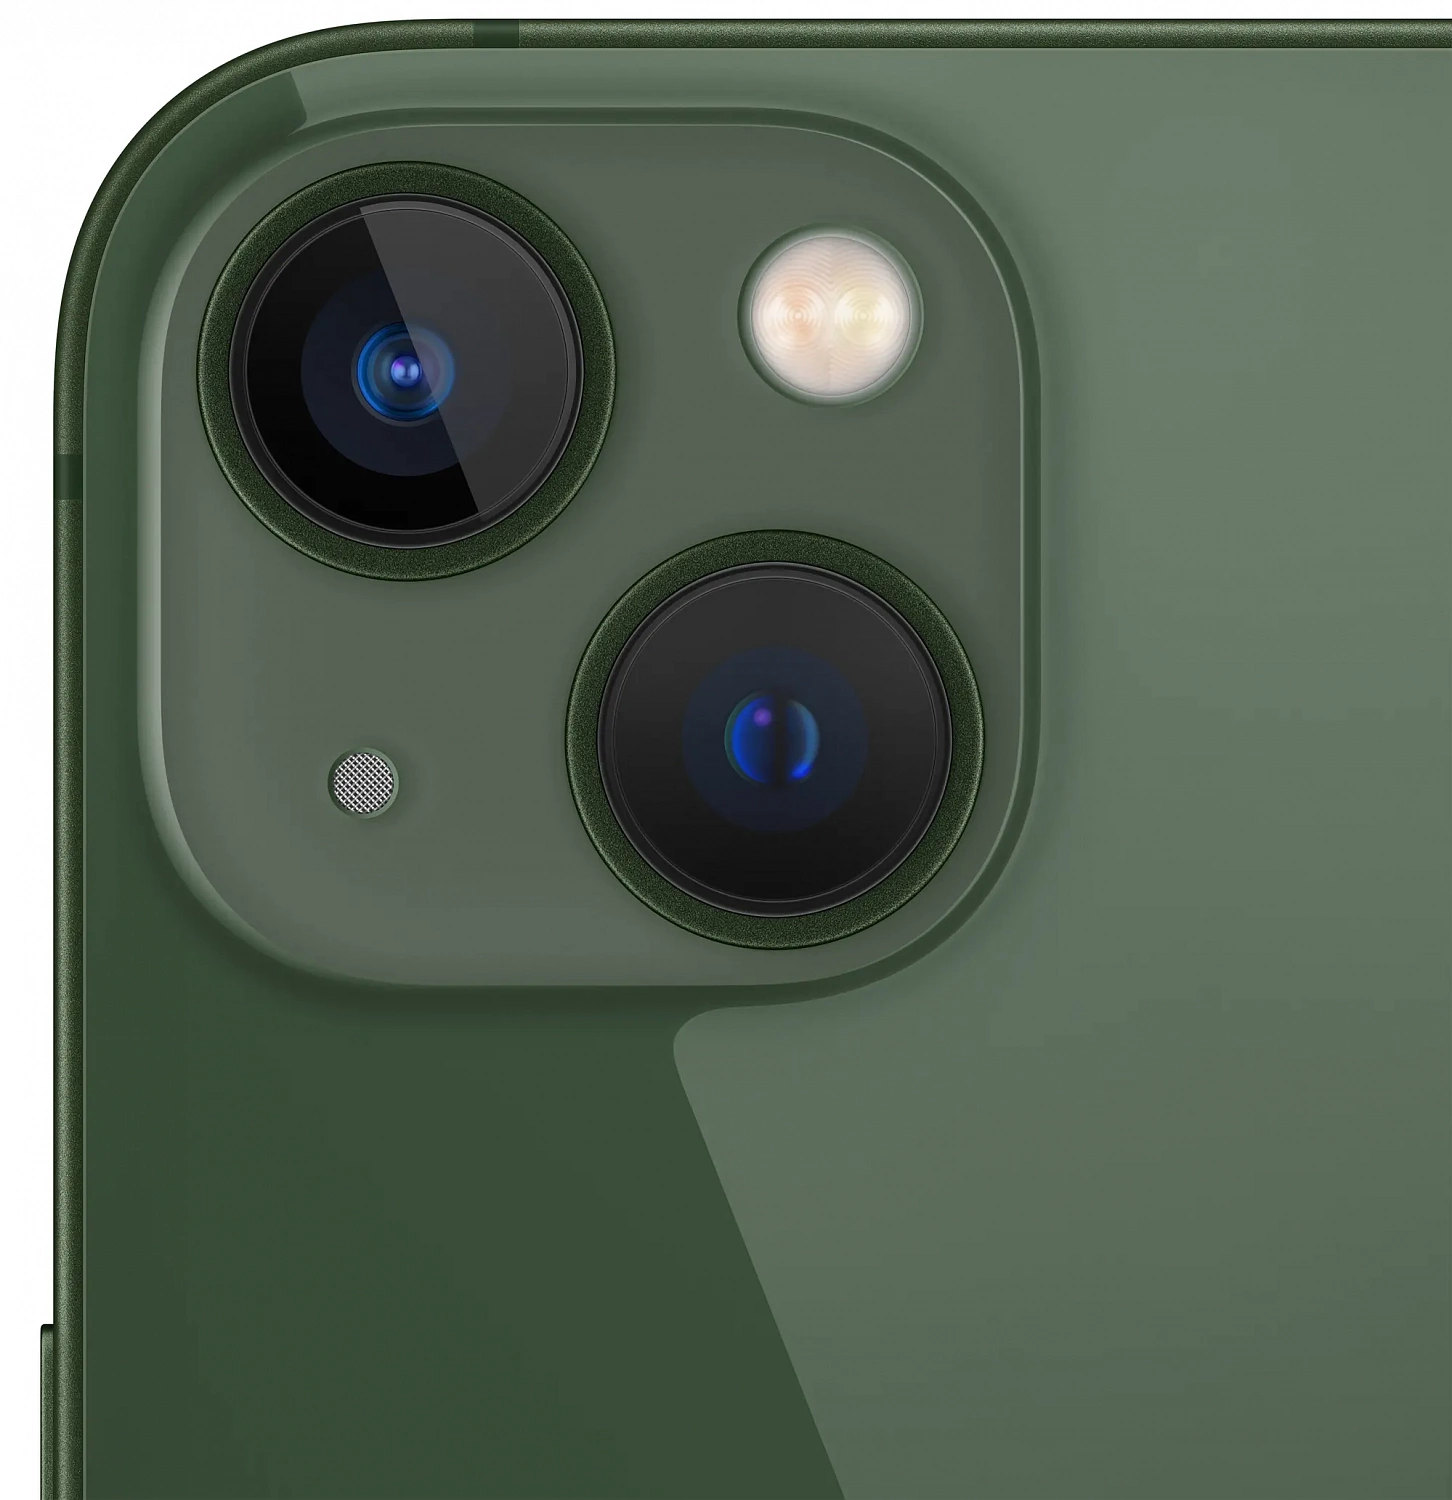 Apple iPhone 13 256Gb Green